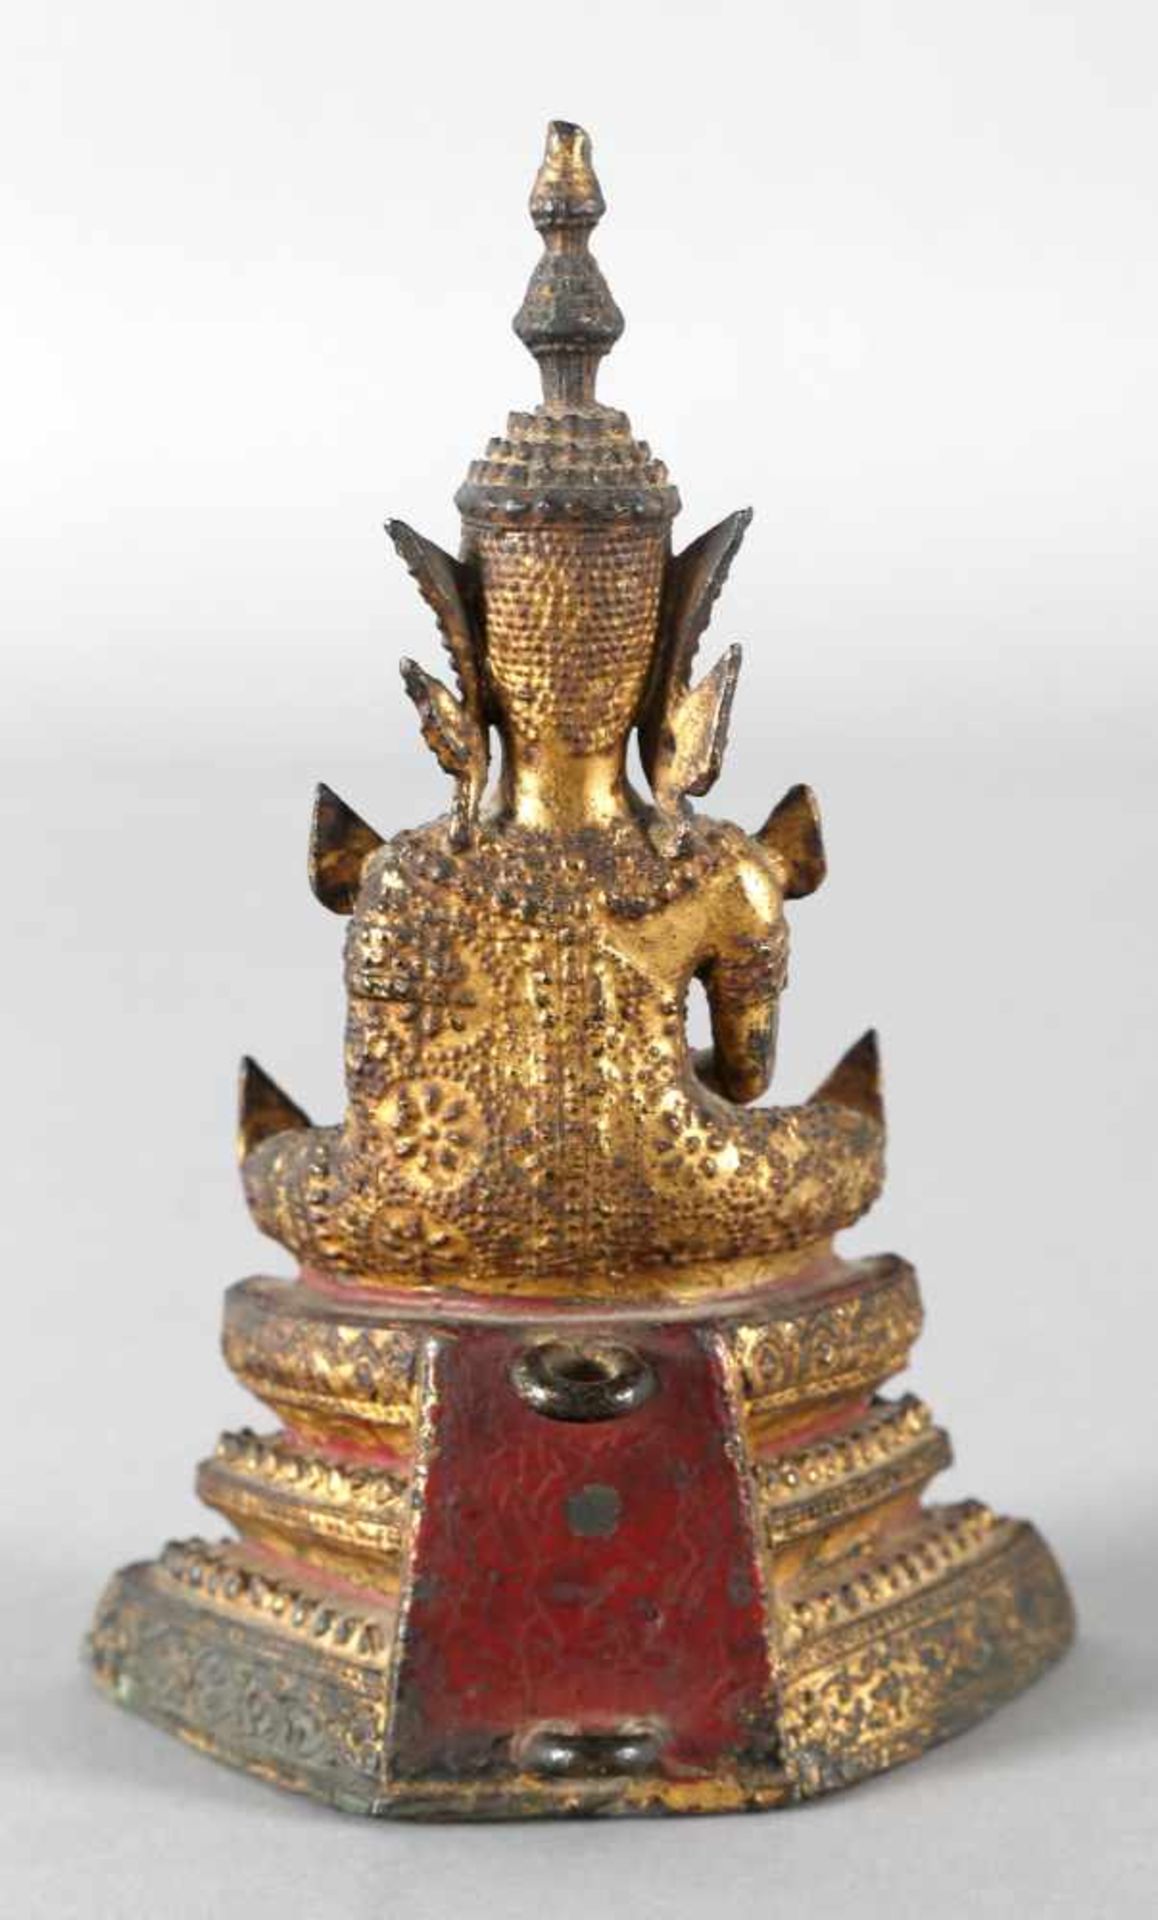 Buddha, Südostasien, wohl Thailand, antikBronze vergoldet, im Meditationssitz, H: 18,5 cm - Bild 2 aus 2